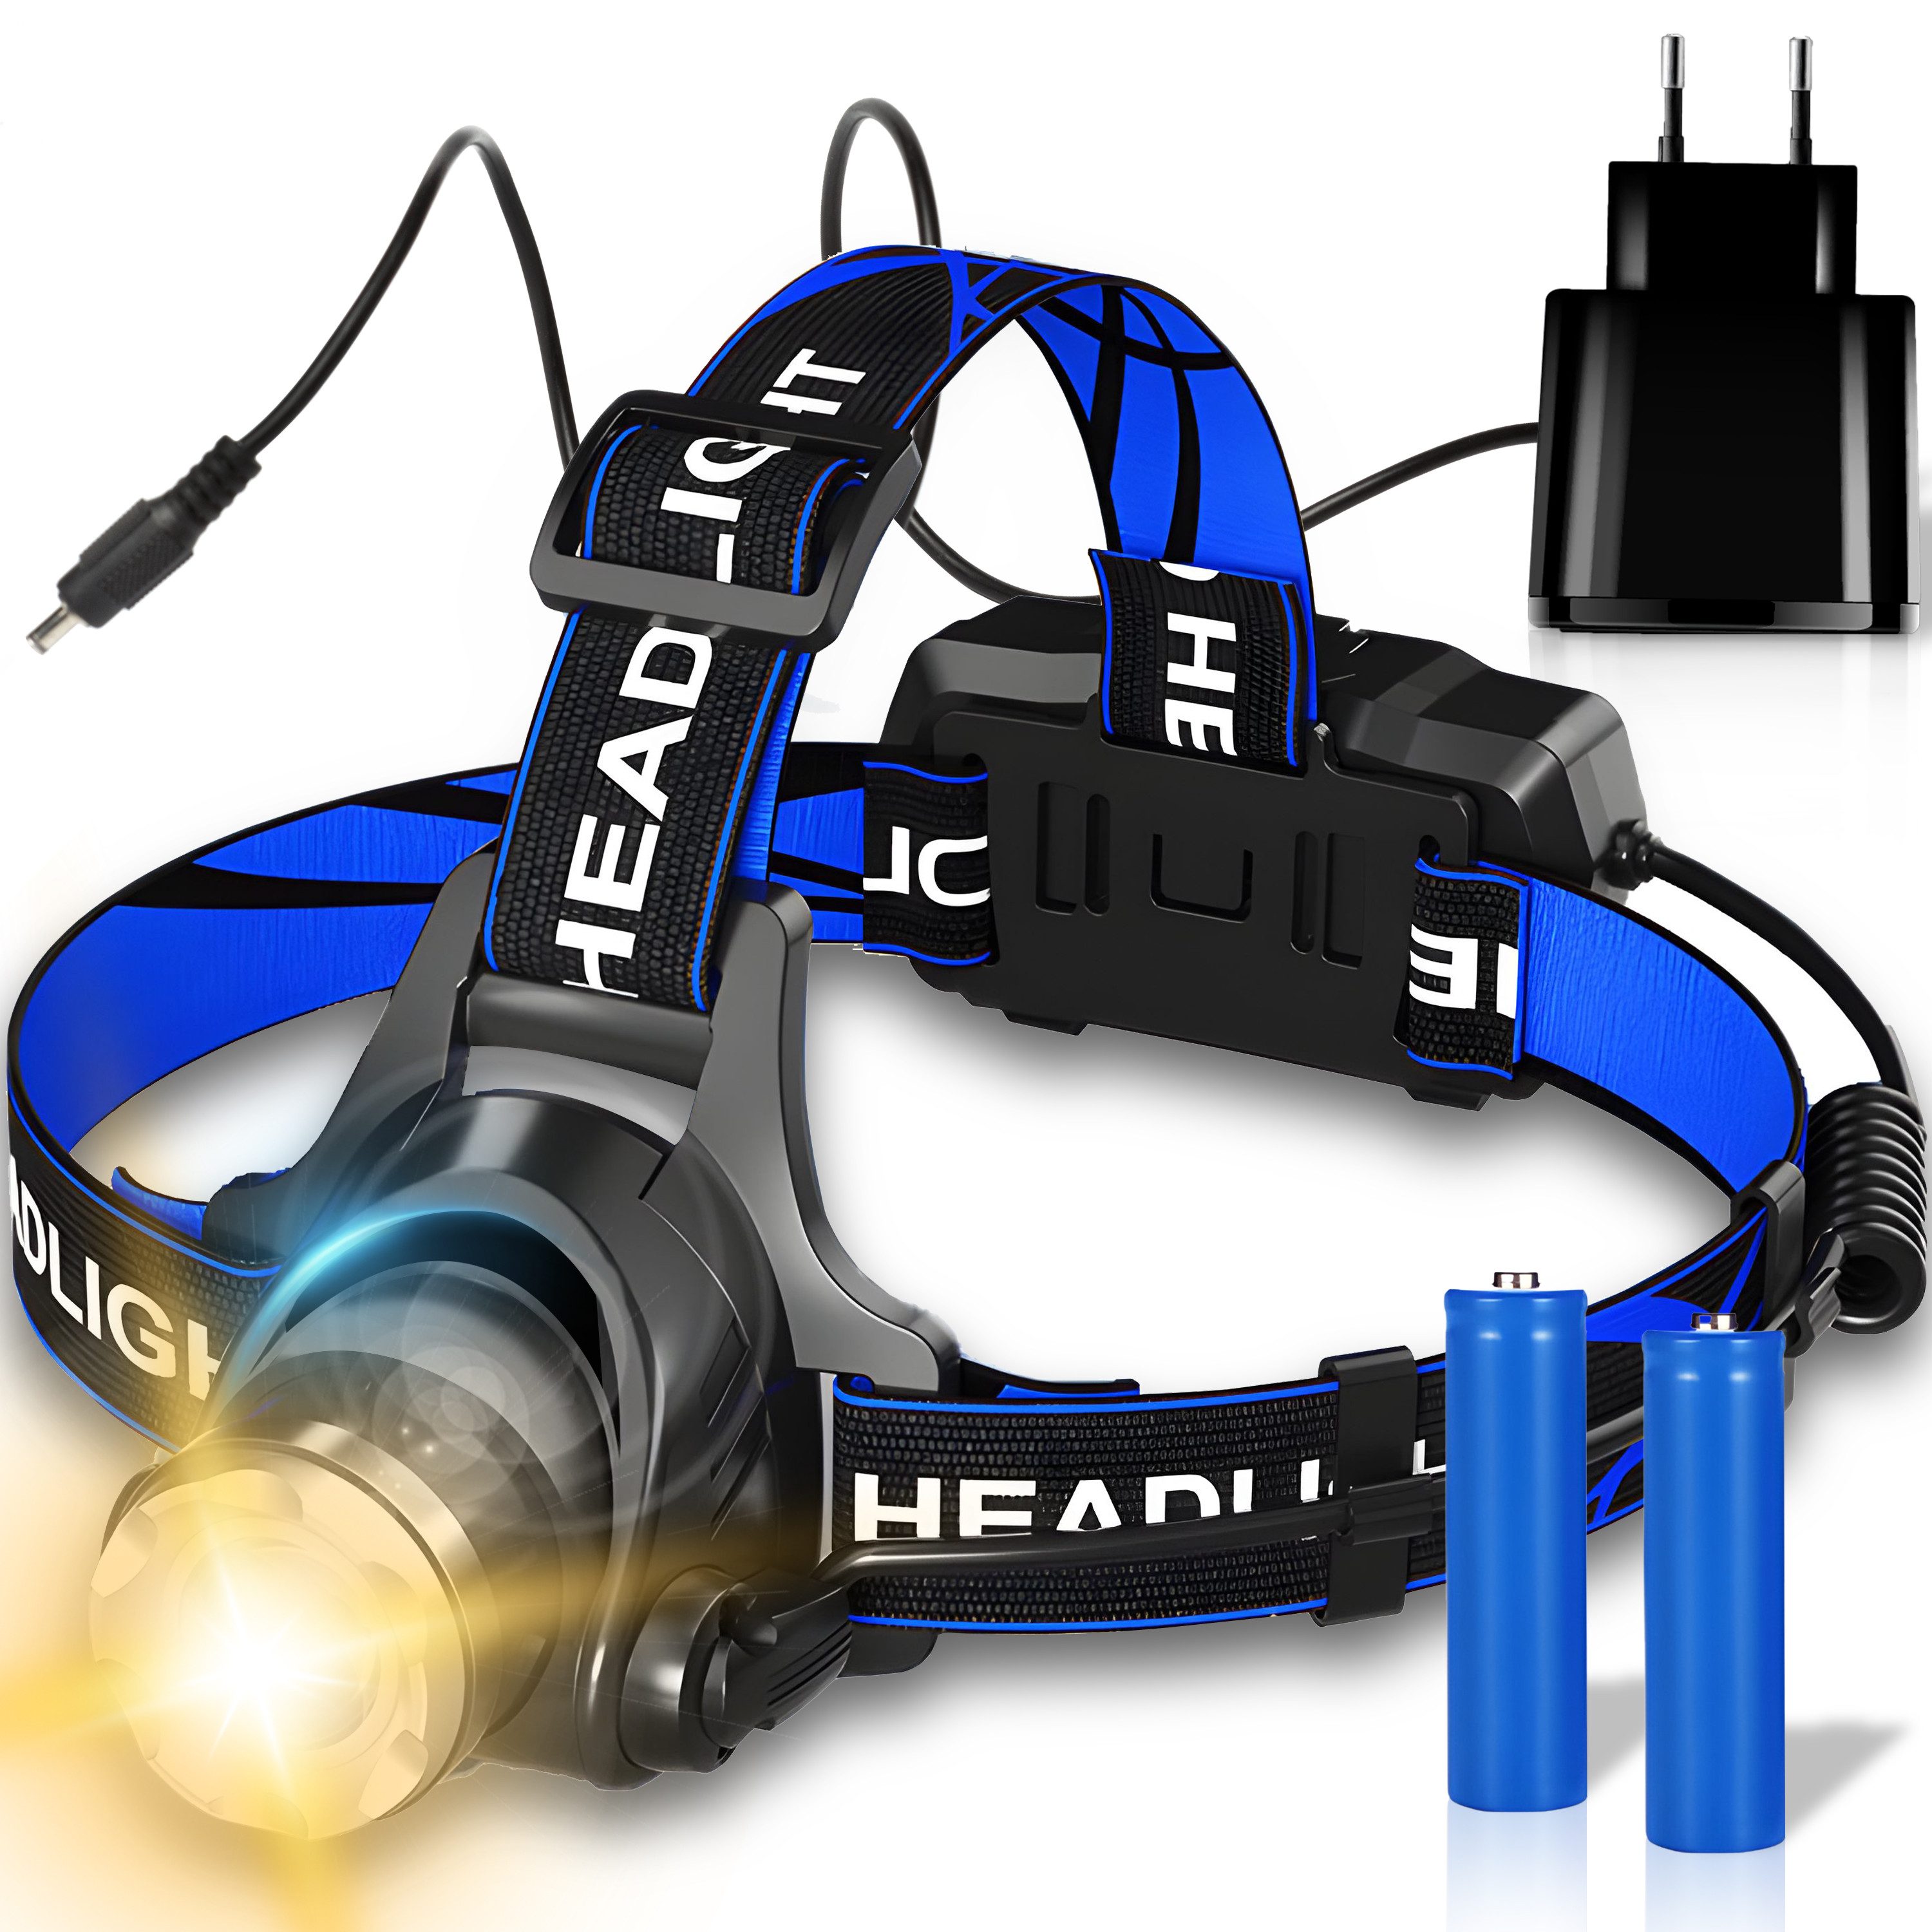 Retoo Stirnlampe LED Stirnlampe Super Hell Wiederaufladbar Kopflampe Headlampe (Set, Taschenlampe mit Riemen USB-Ladekabel Originalverpackung), Hervorragende Haltbarkeit, Vielseitigkeit, Hohe Helligkeit